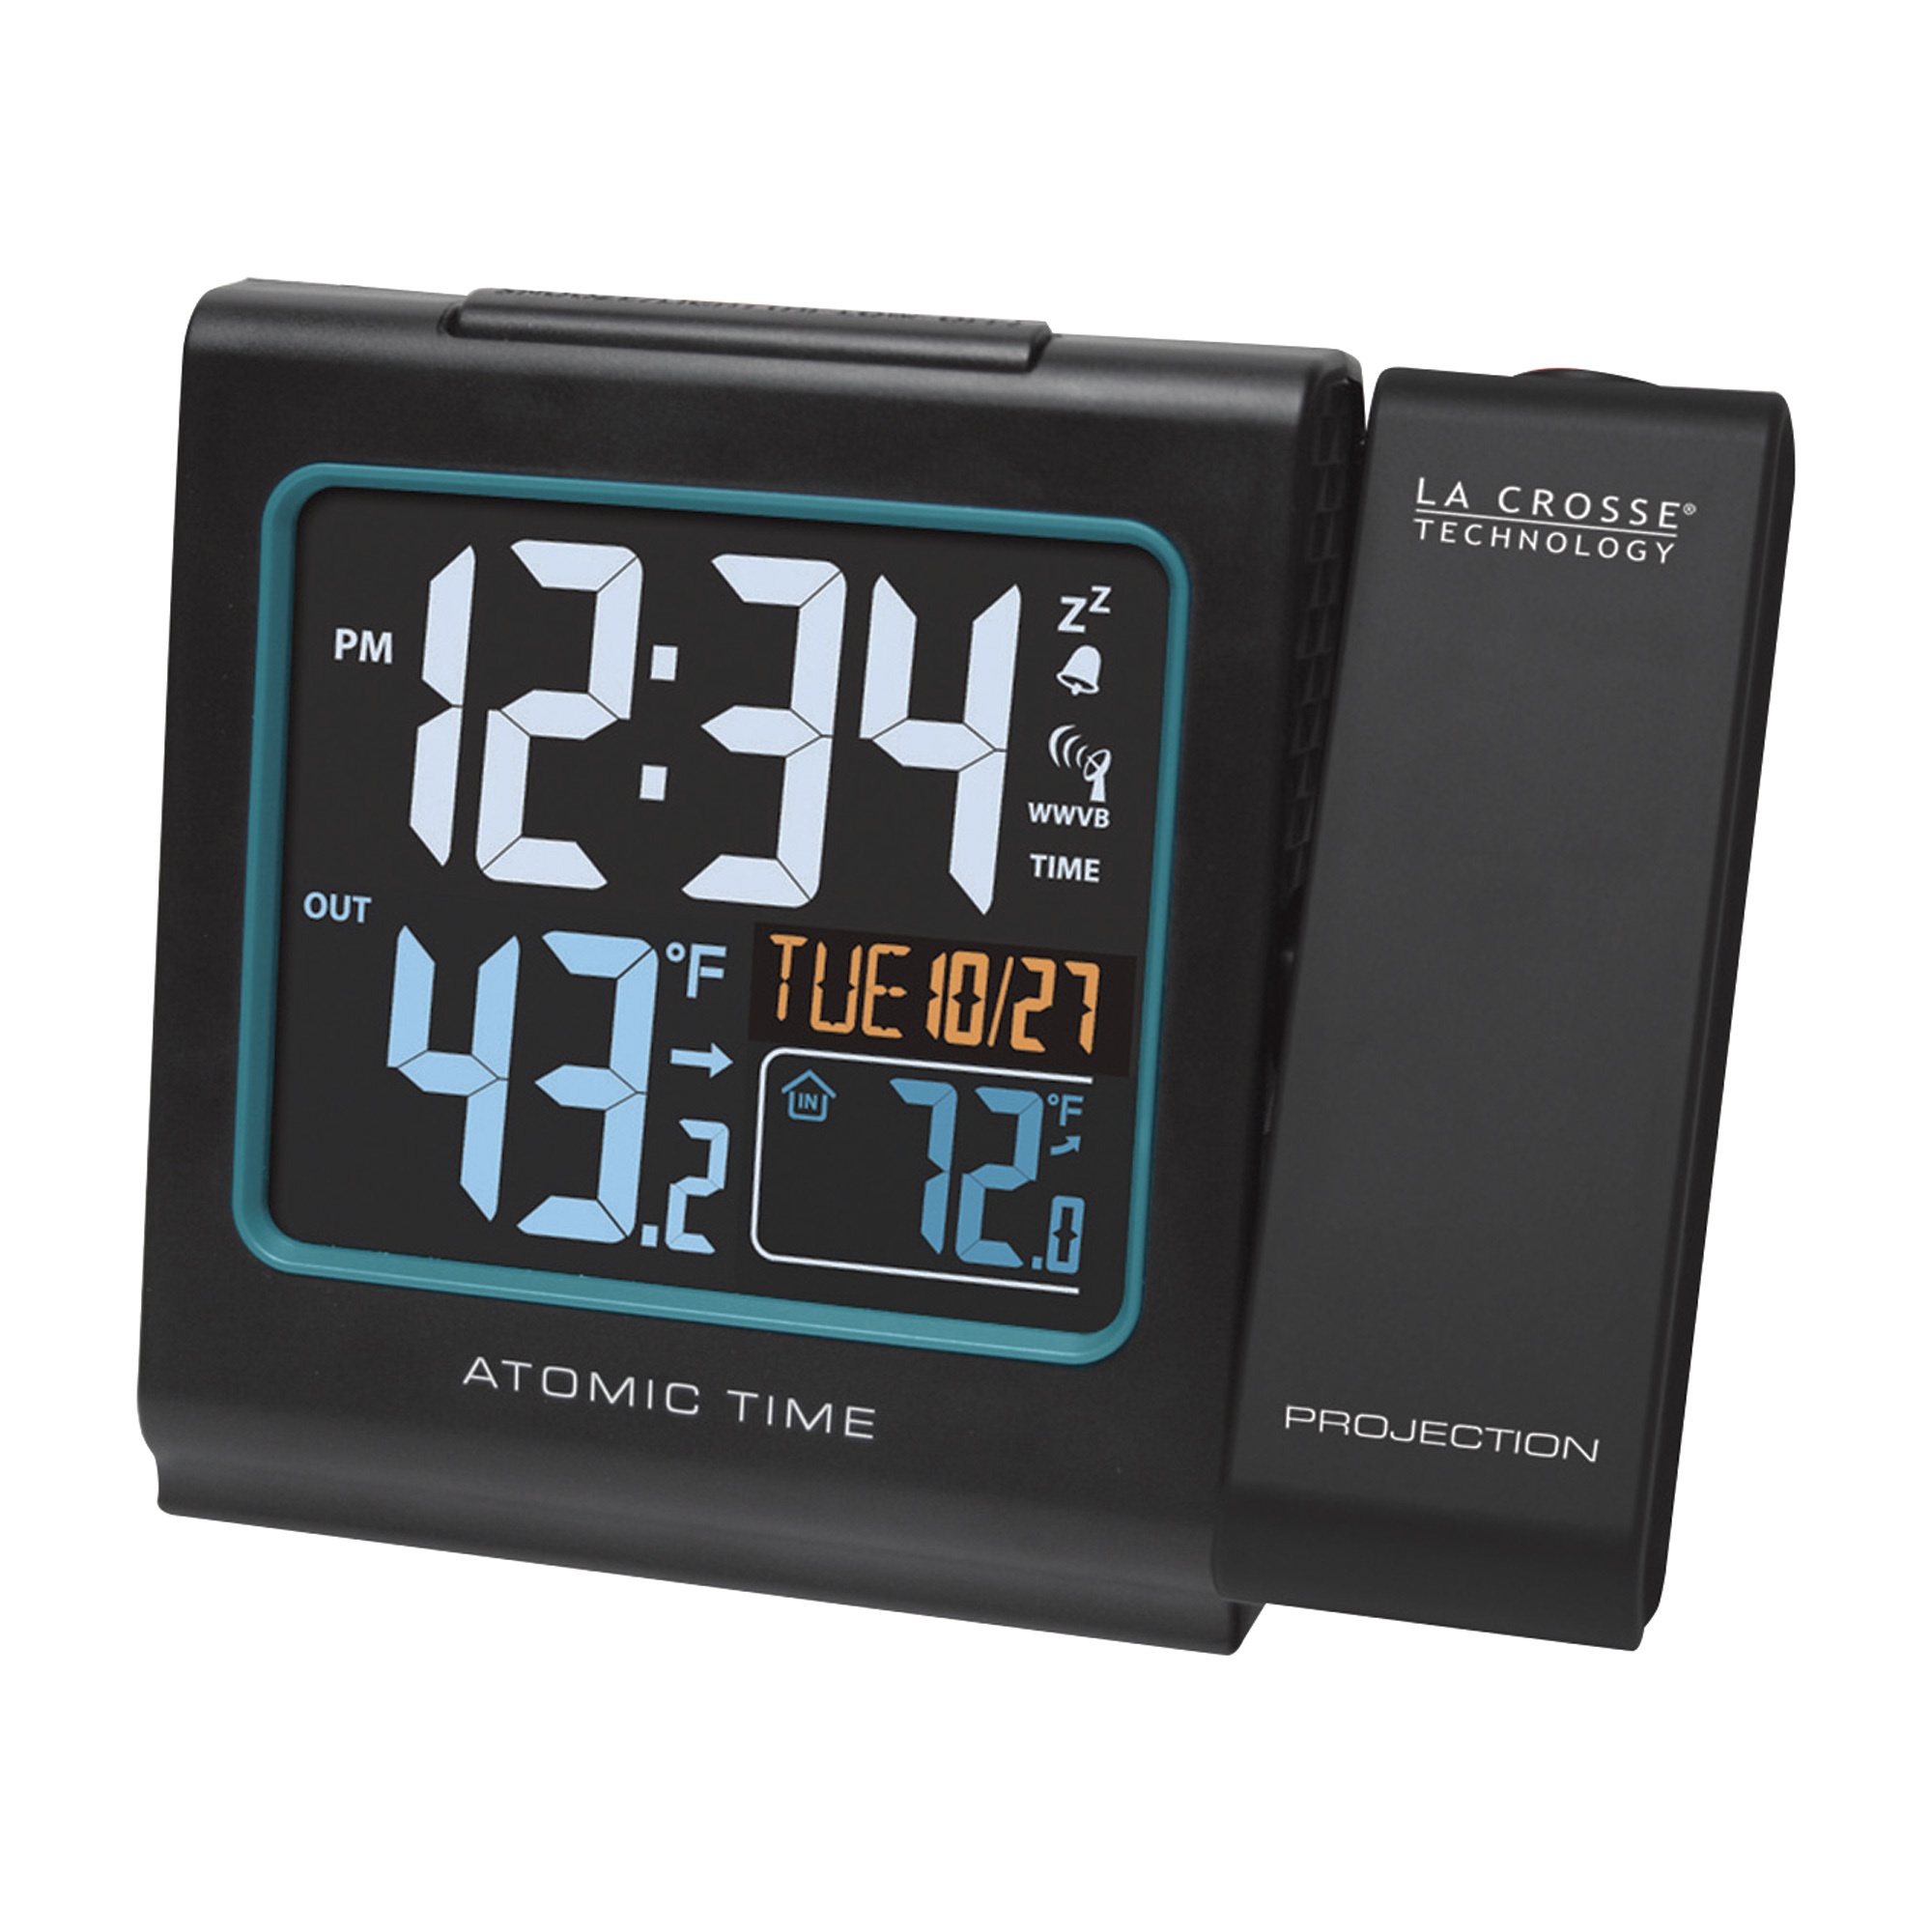 LaCrosse Technology Projection Alarm Clock, Model # 616-146 -  La Crosse Technology